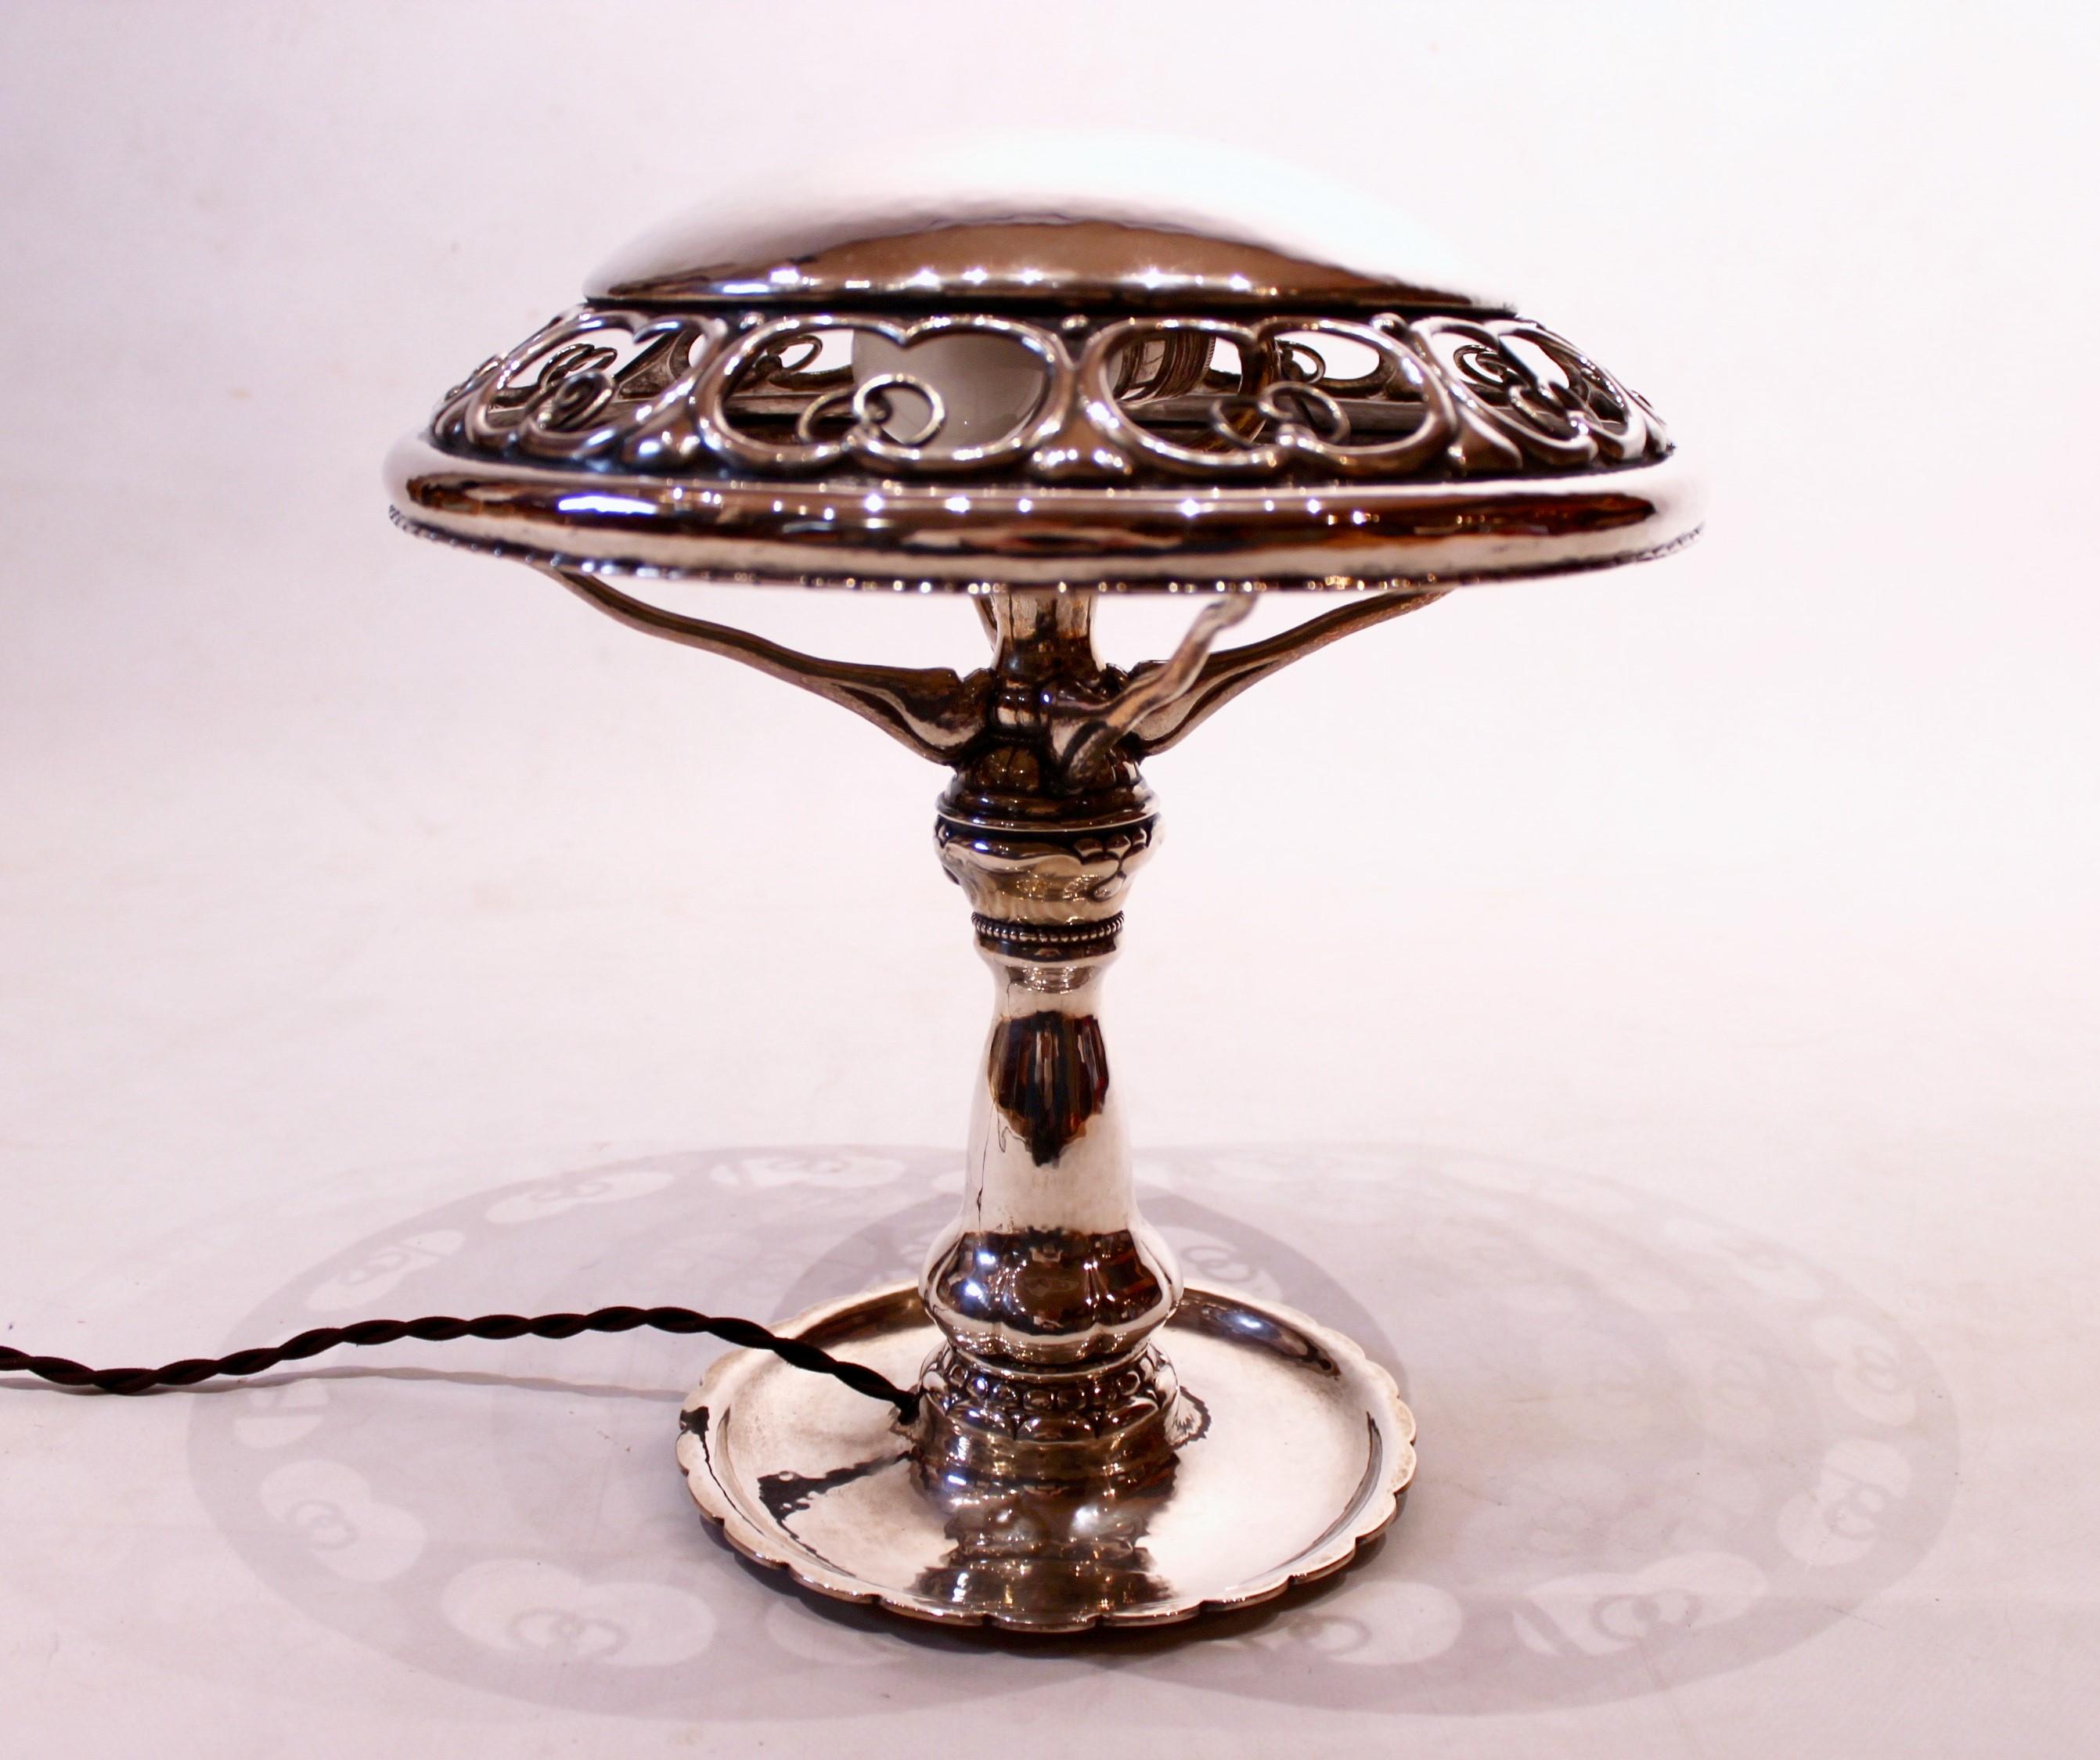 
Die Tischleuchte ist aus massivem Silber gefertigt und mit schönen Verzierungen versehen, die die für antike Gegenstände typische Ästhetik und Eleganz widerspiegeln. Die Lampe ist in ausgezeichnetem antiken Zustand und strahlt eine zeitlose